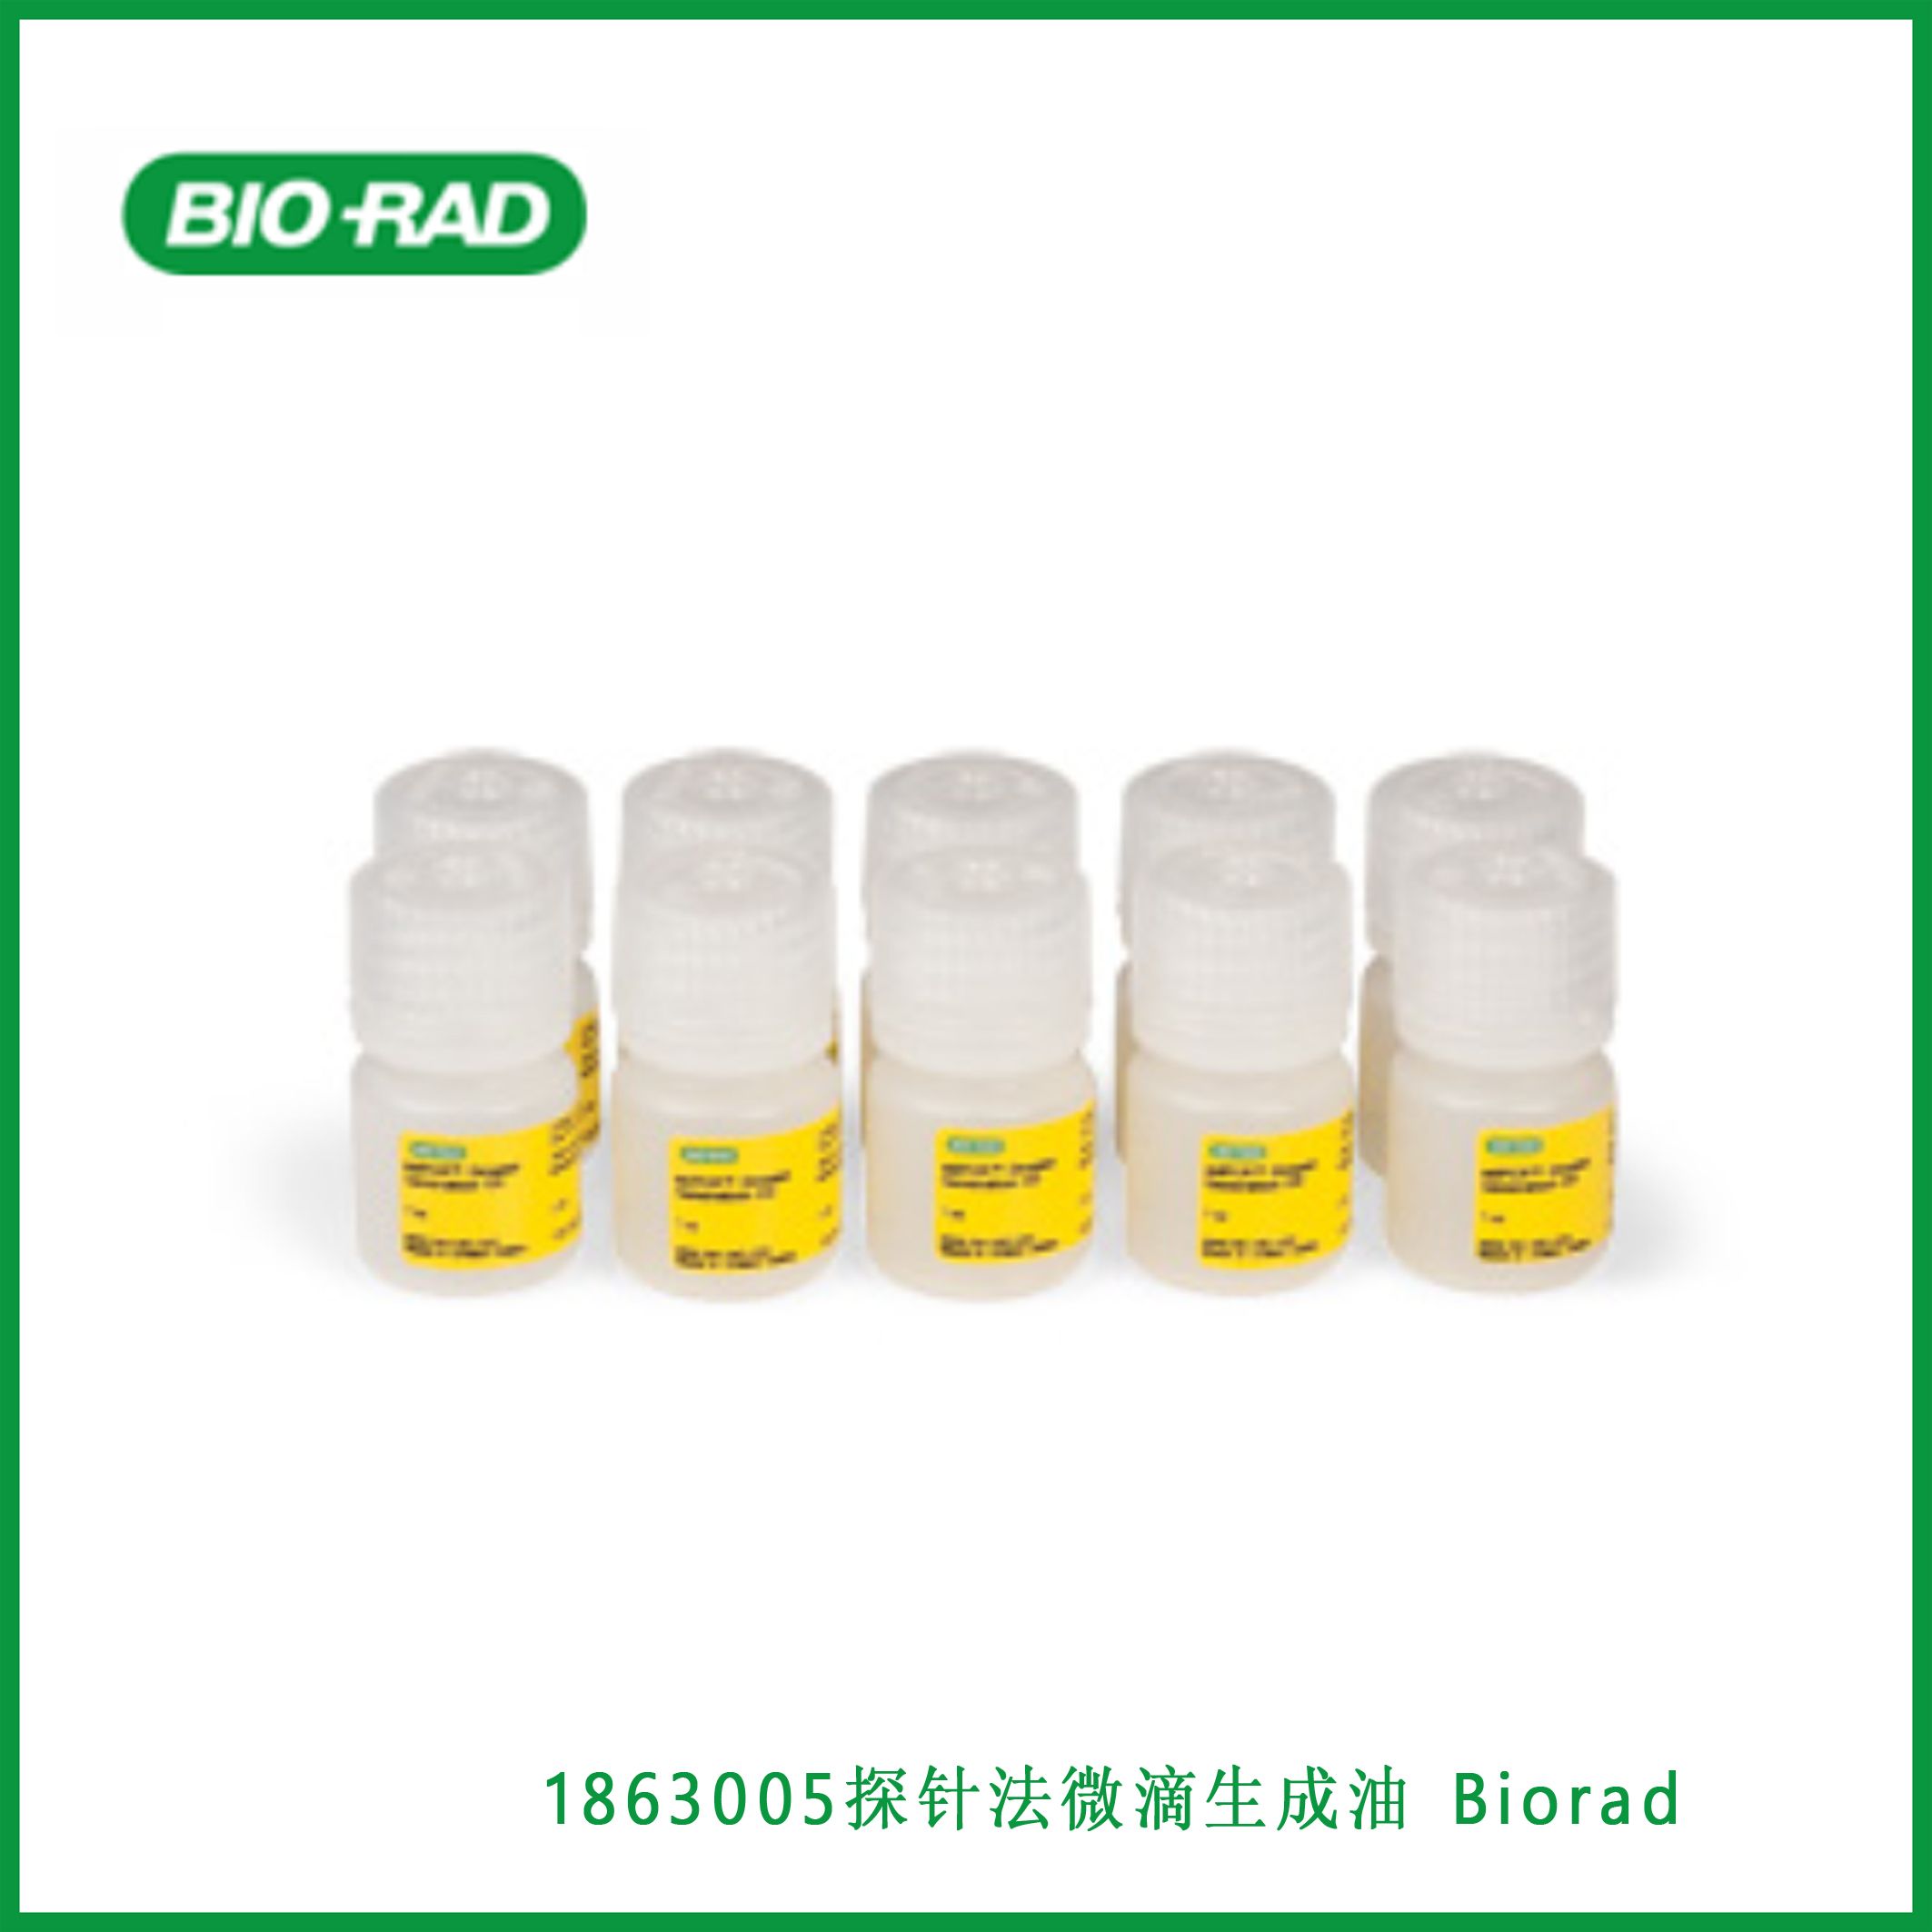 伯乐Bio-Rad1863005Droplet Generation Oil for Probes，探针法微滴生成油 Biorad,现货